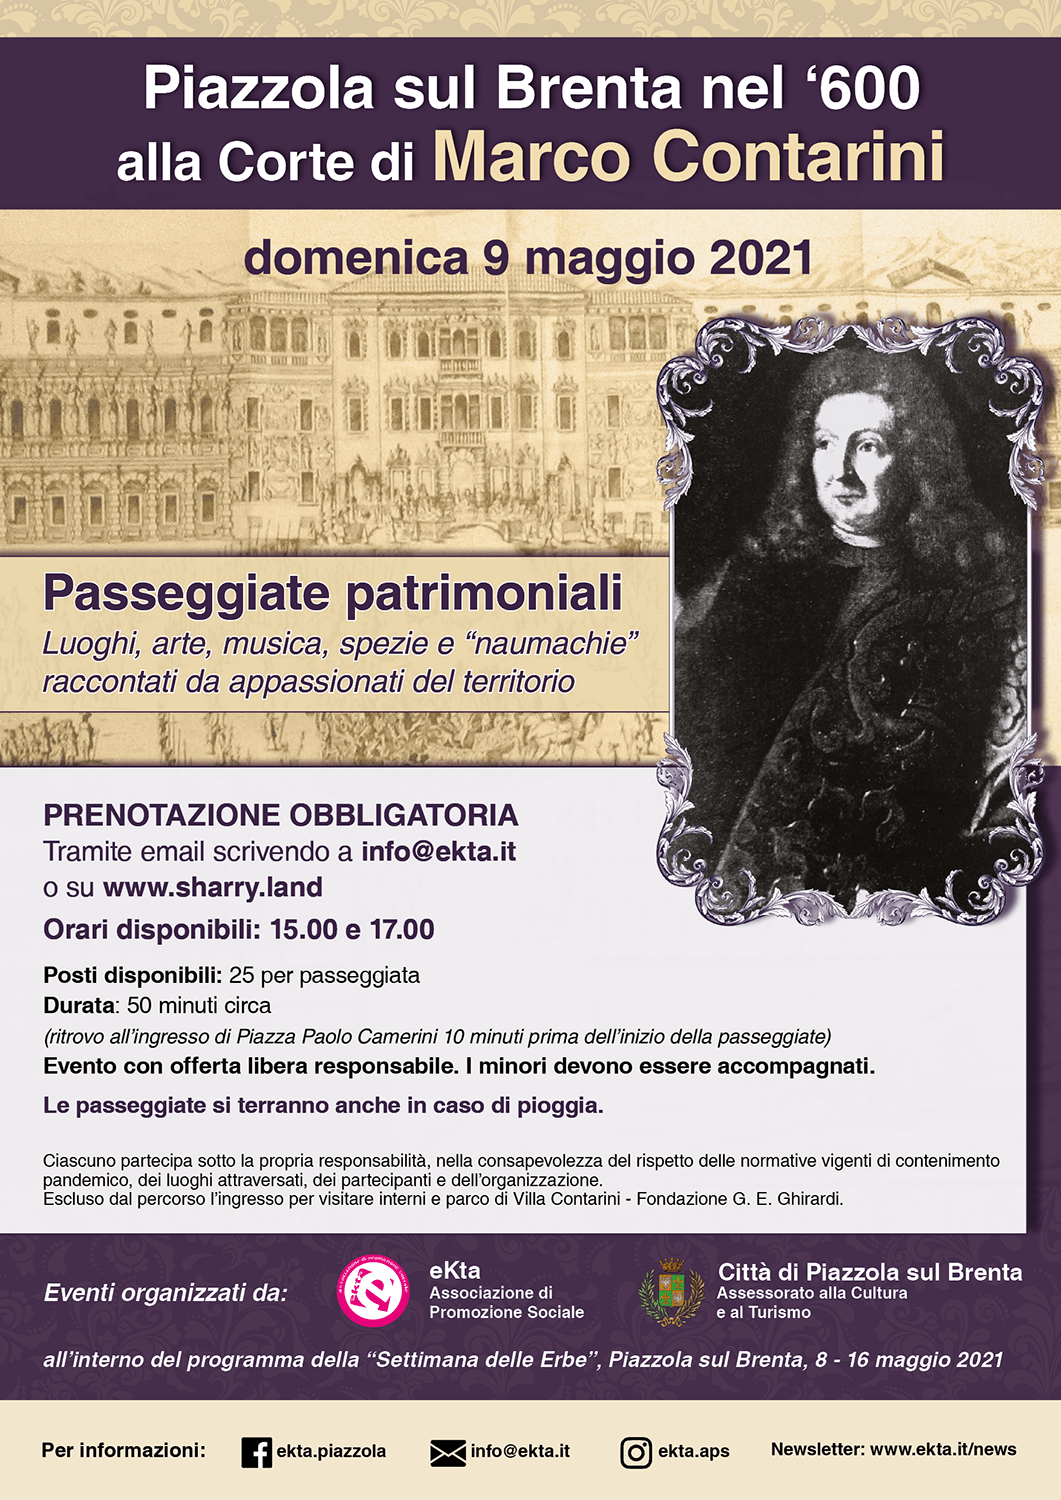 Passeggiata Patrimoniale - 9 maggio 2021 -Piazzola sul Brenta nel '600